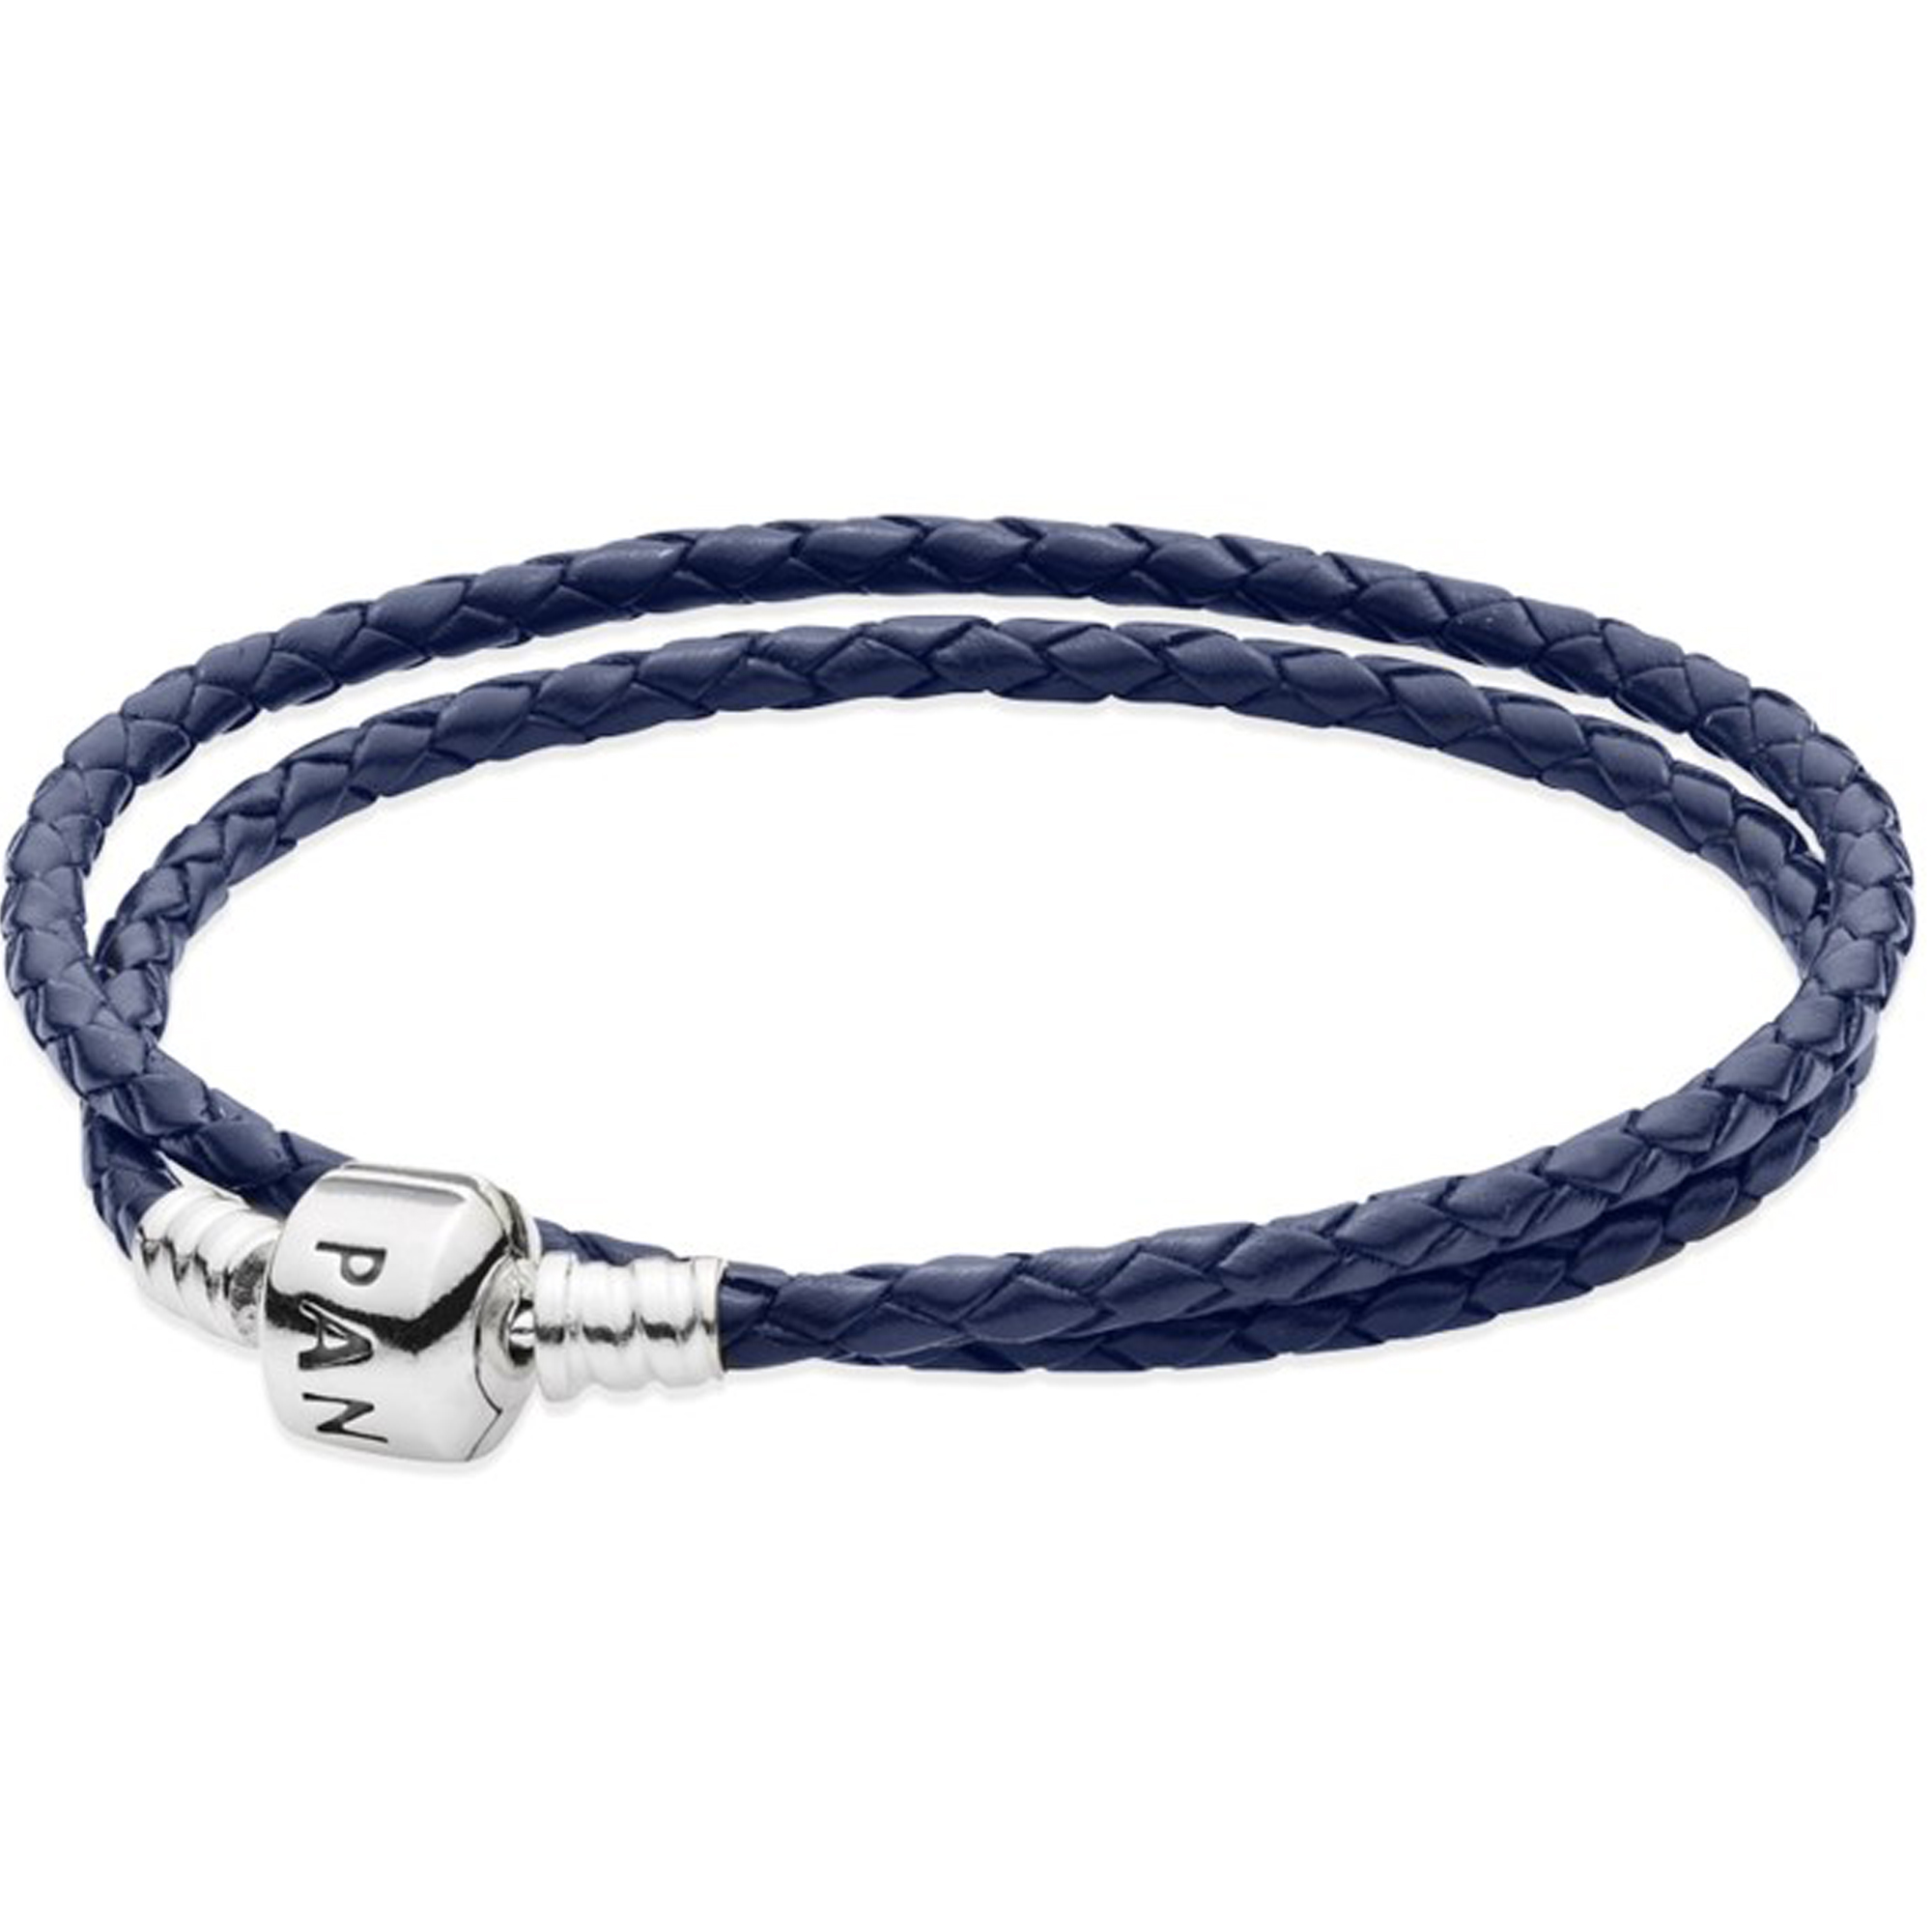 Двойной кожаный синий браслет с застежкой из серебра | PANDORA 